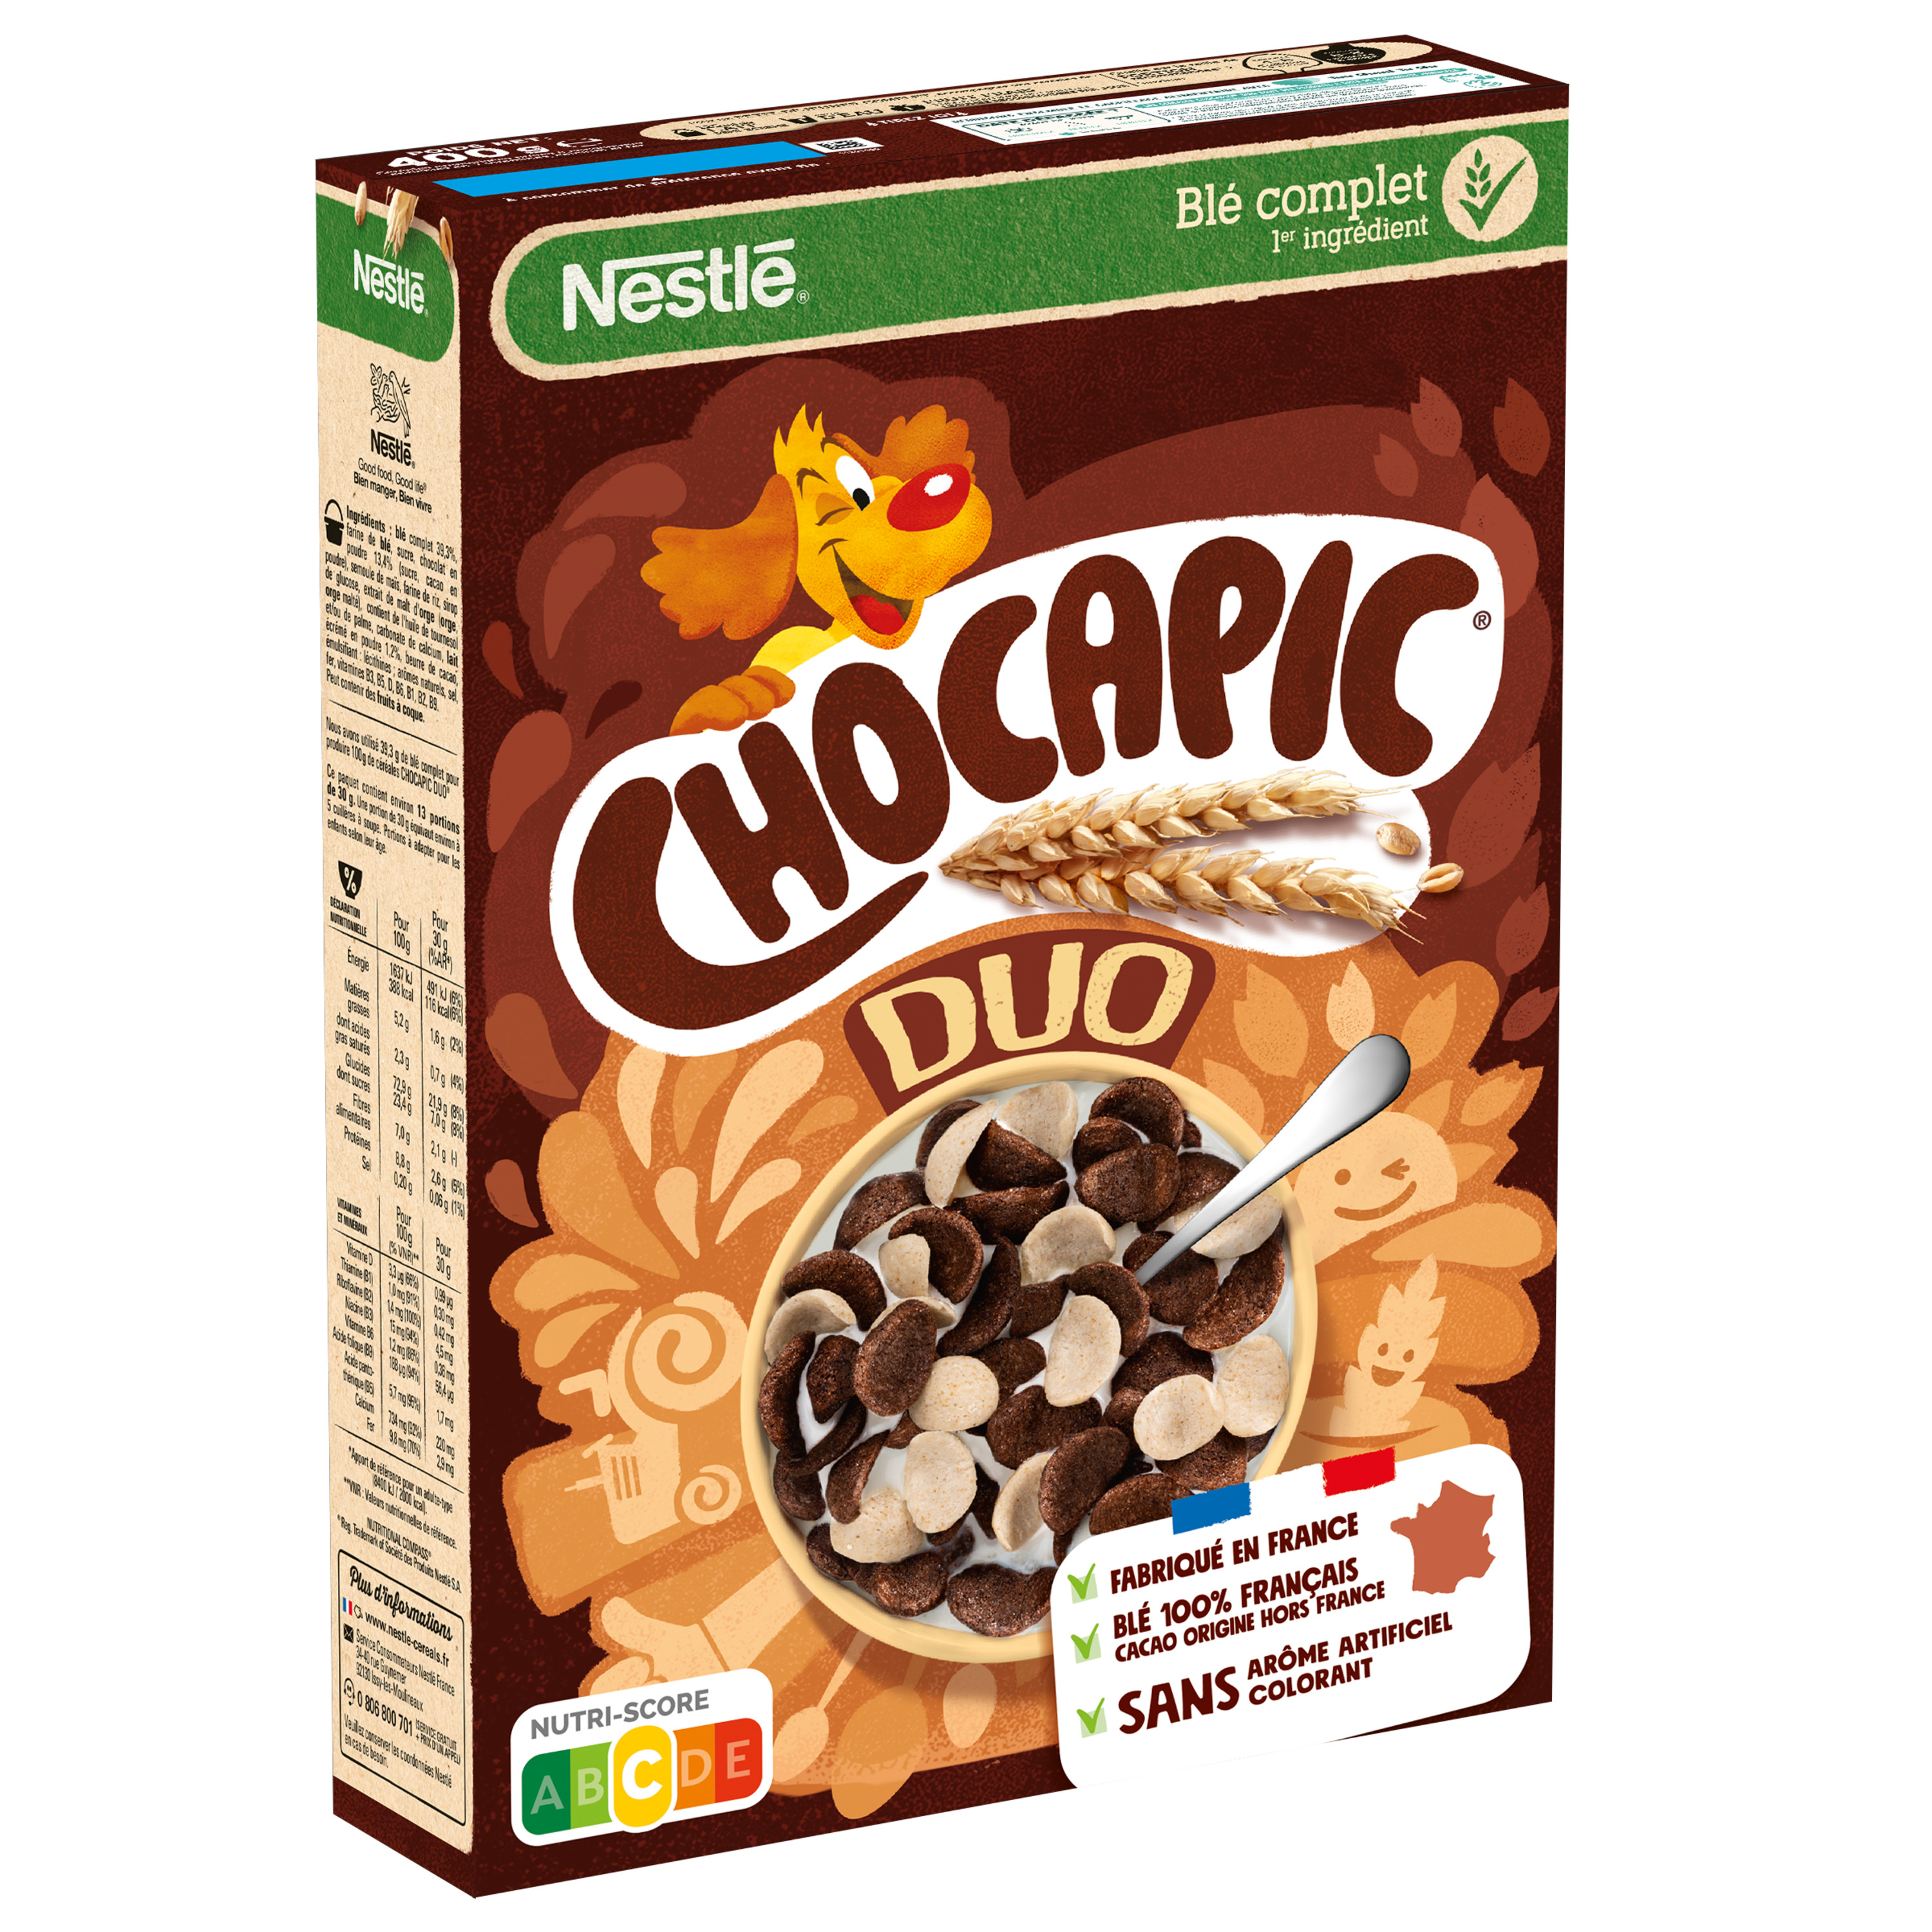 CHOCAPIC Céréales au chocolat Maxi format 750g pas cher 